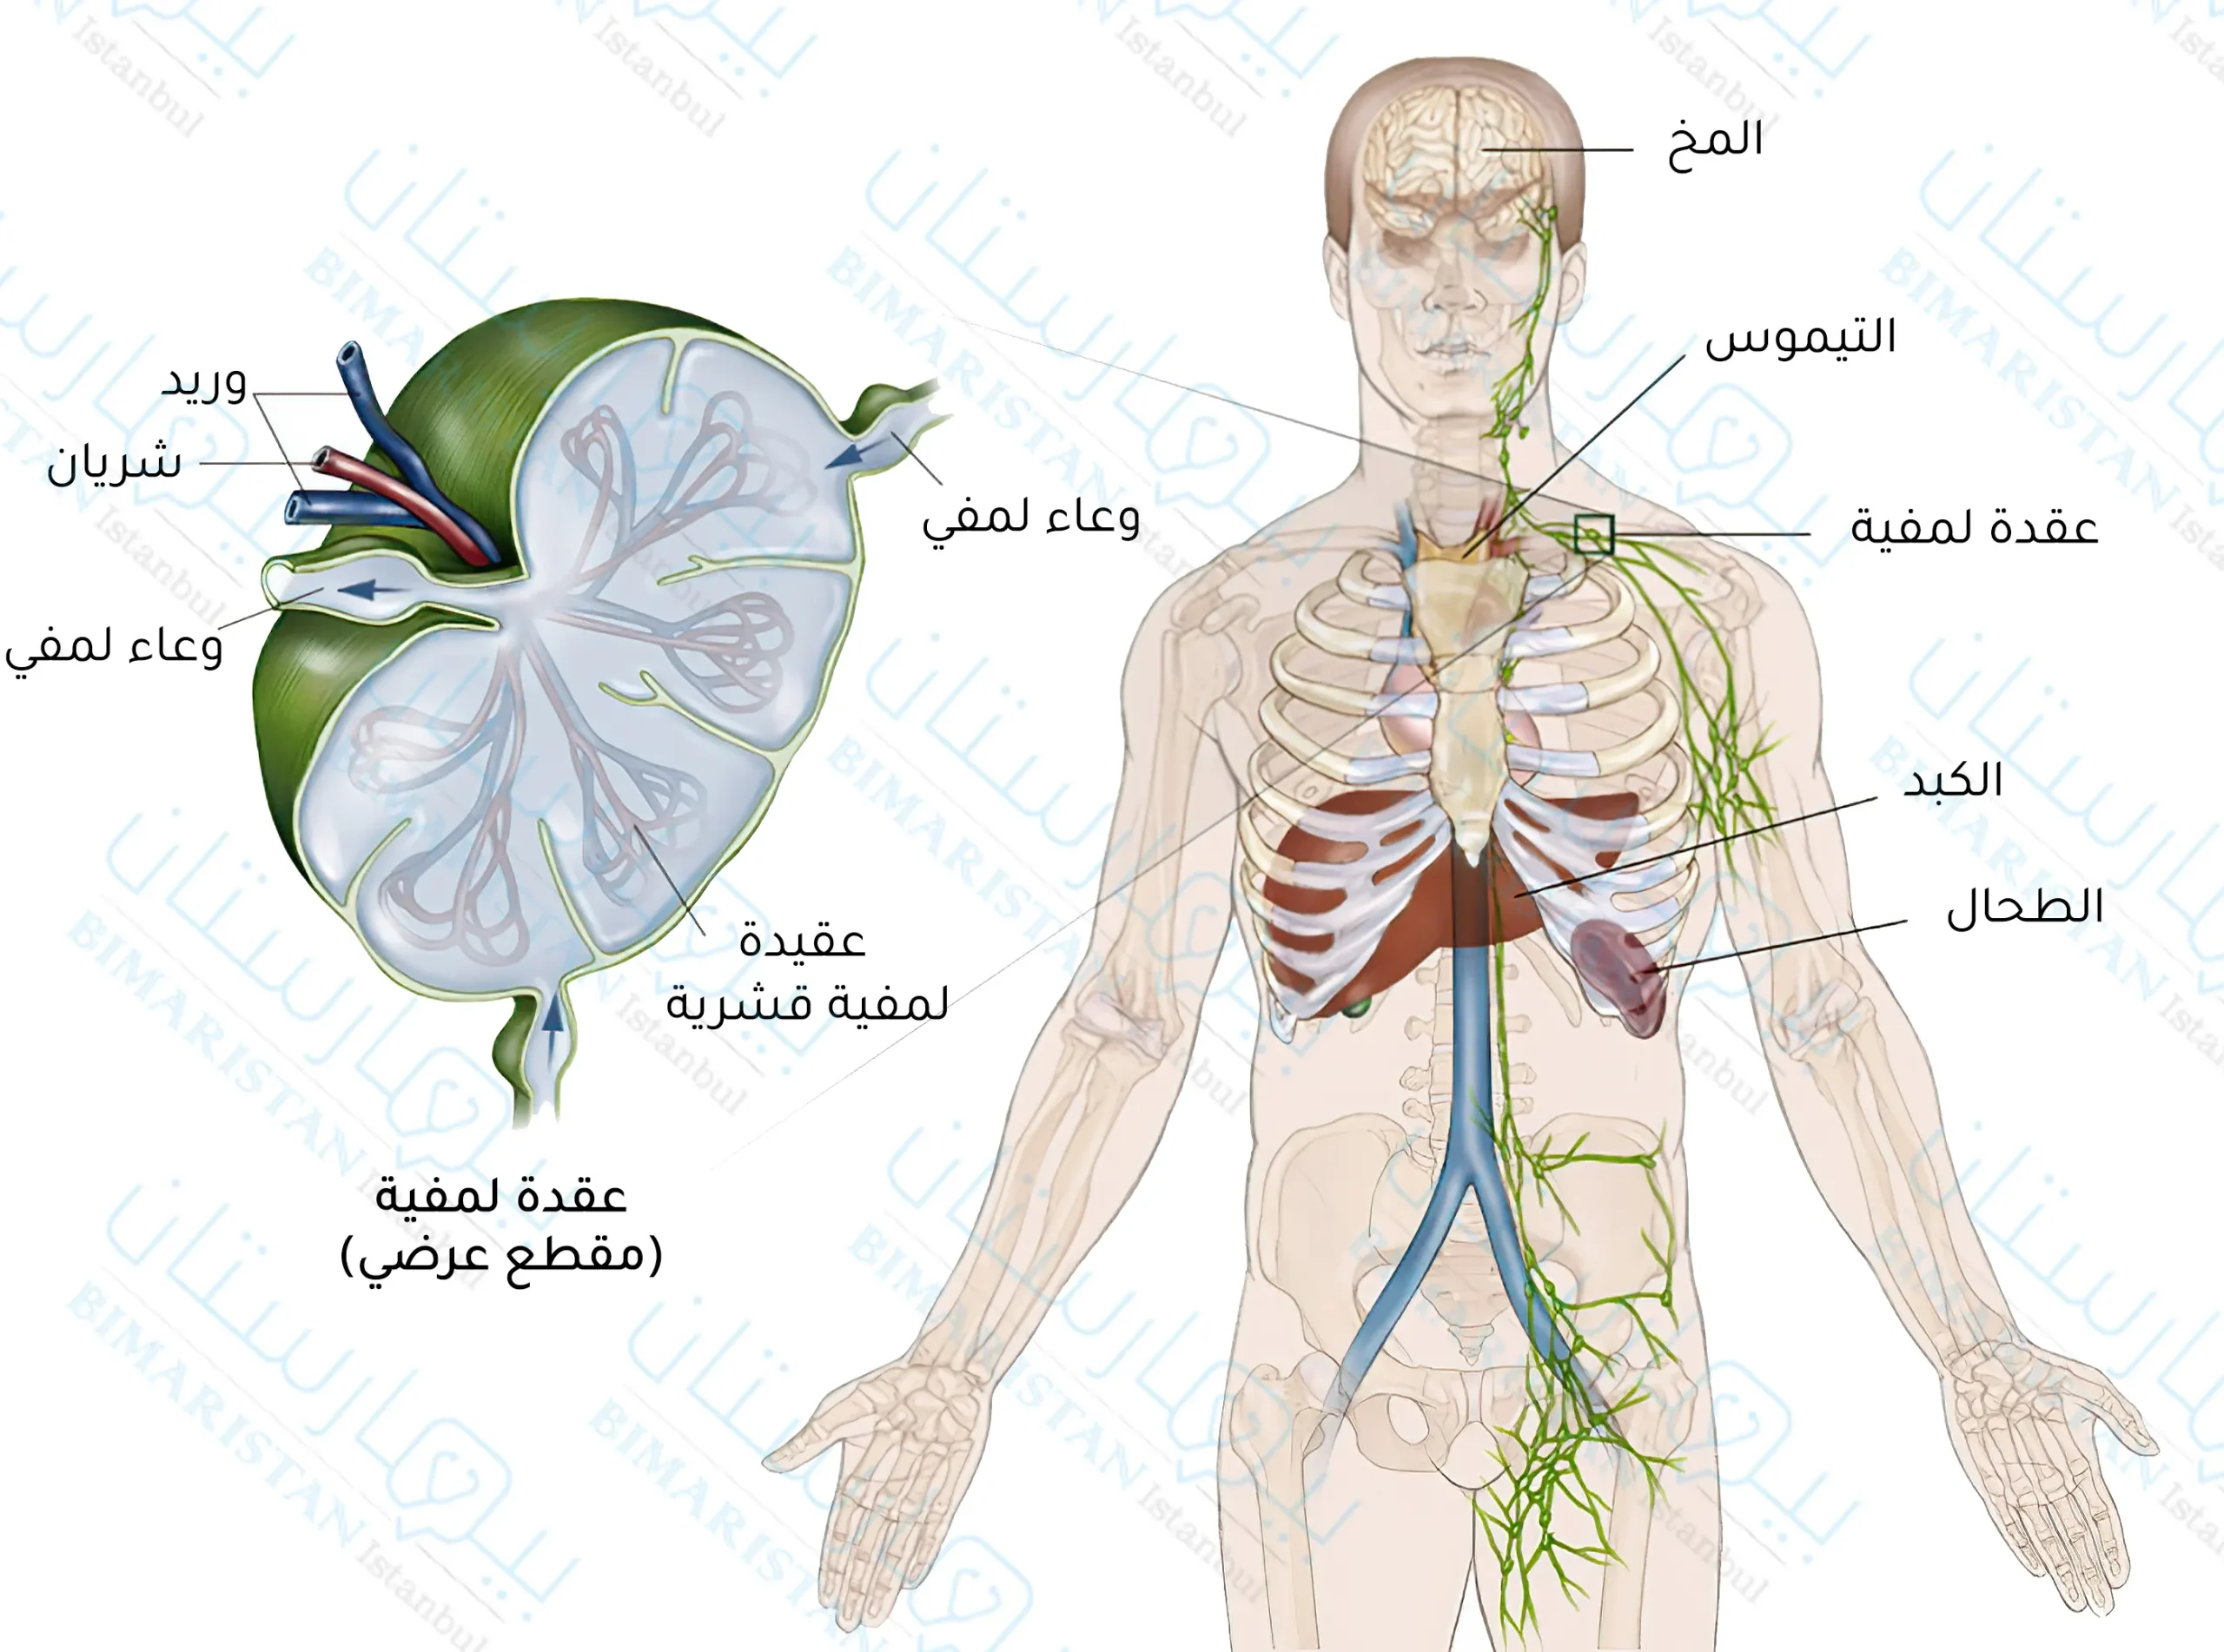 صورة للجهاز اللمفي في جسم الإنسان ومقطع في العقدة اللمفية